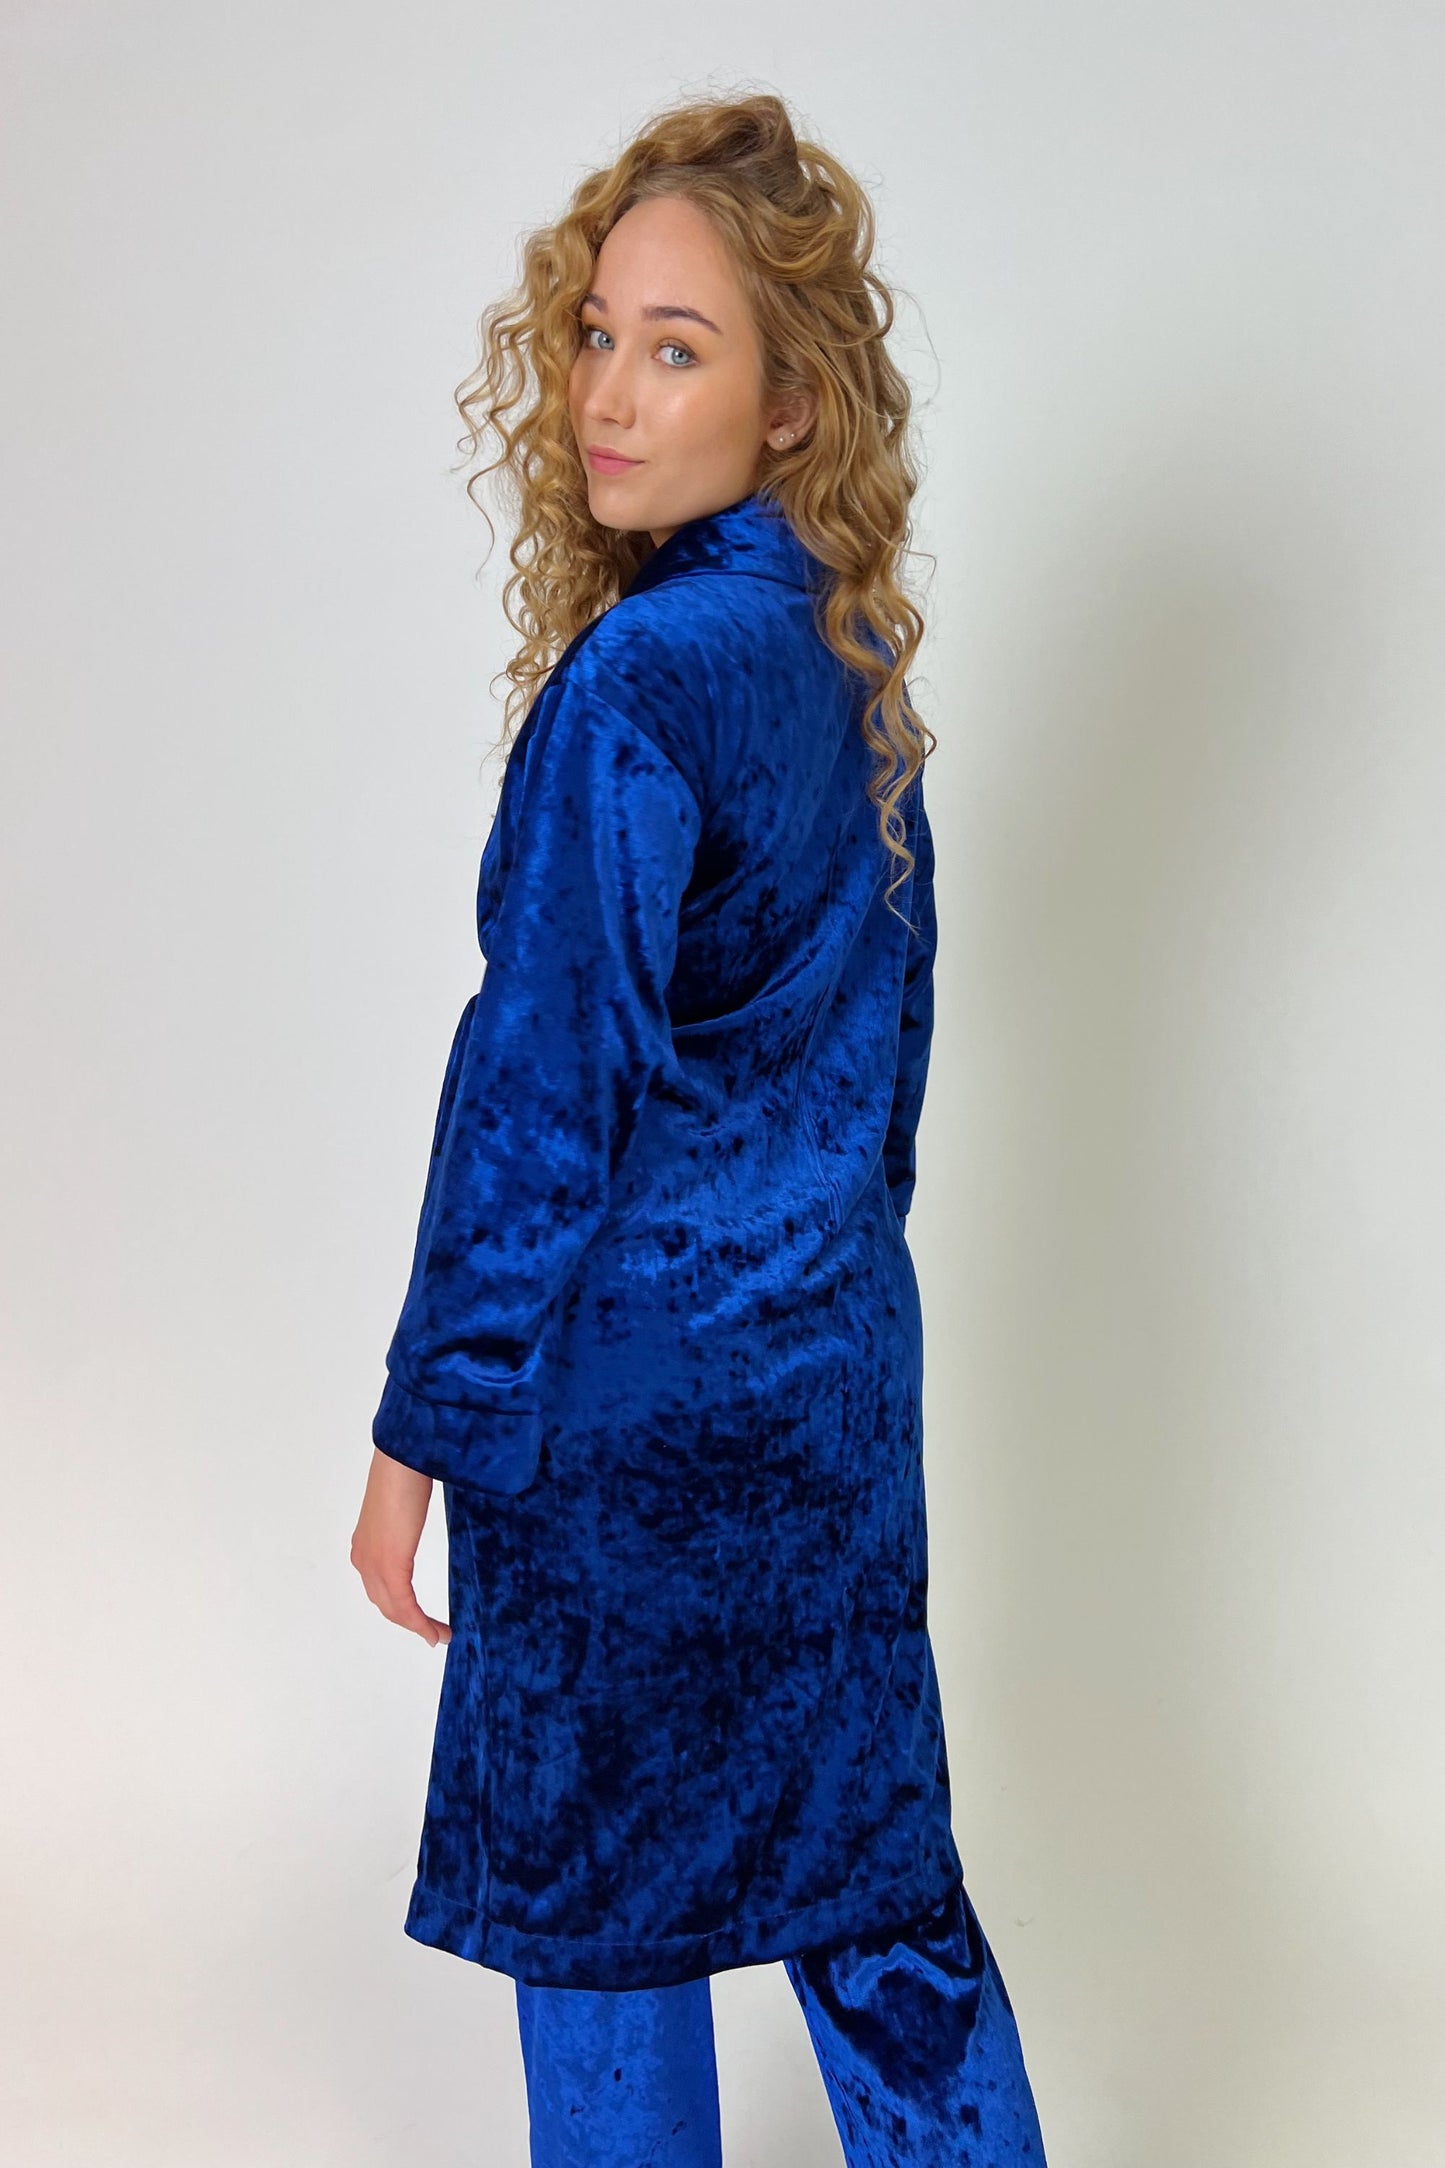 Bright blue velvet robe